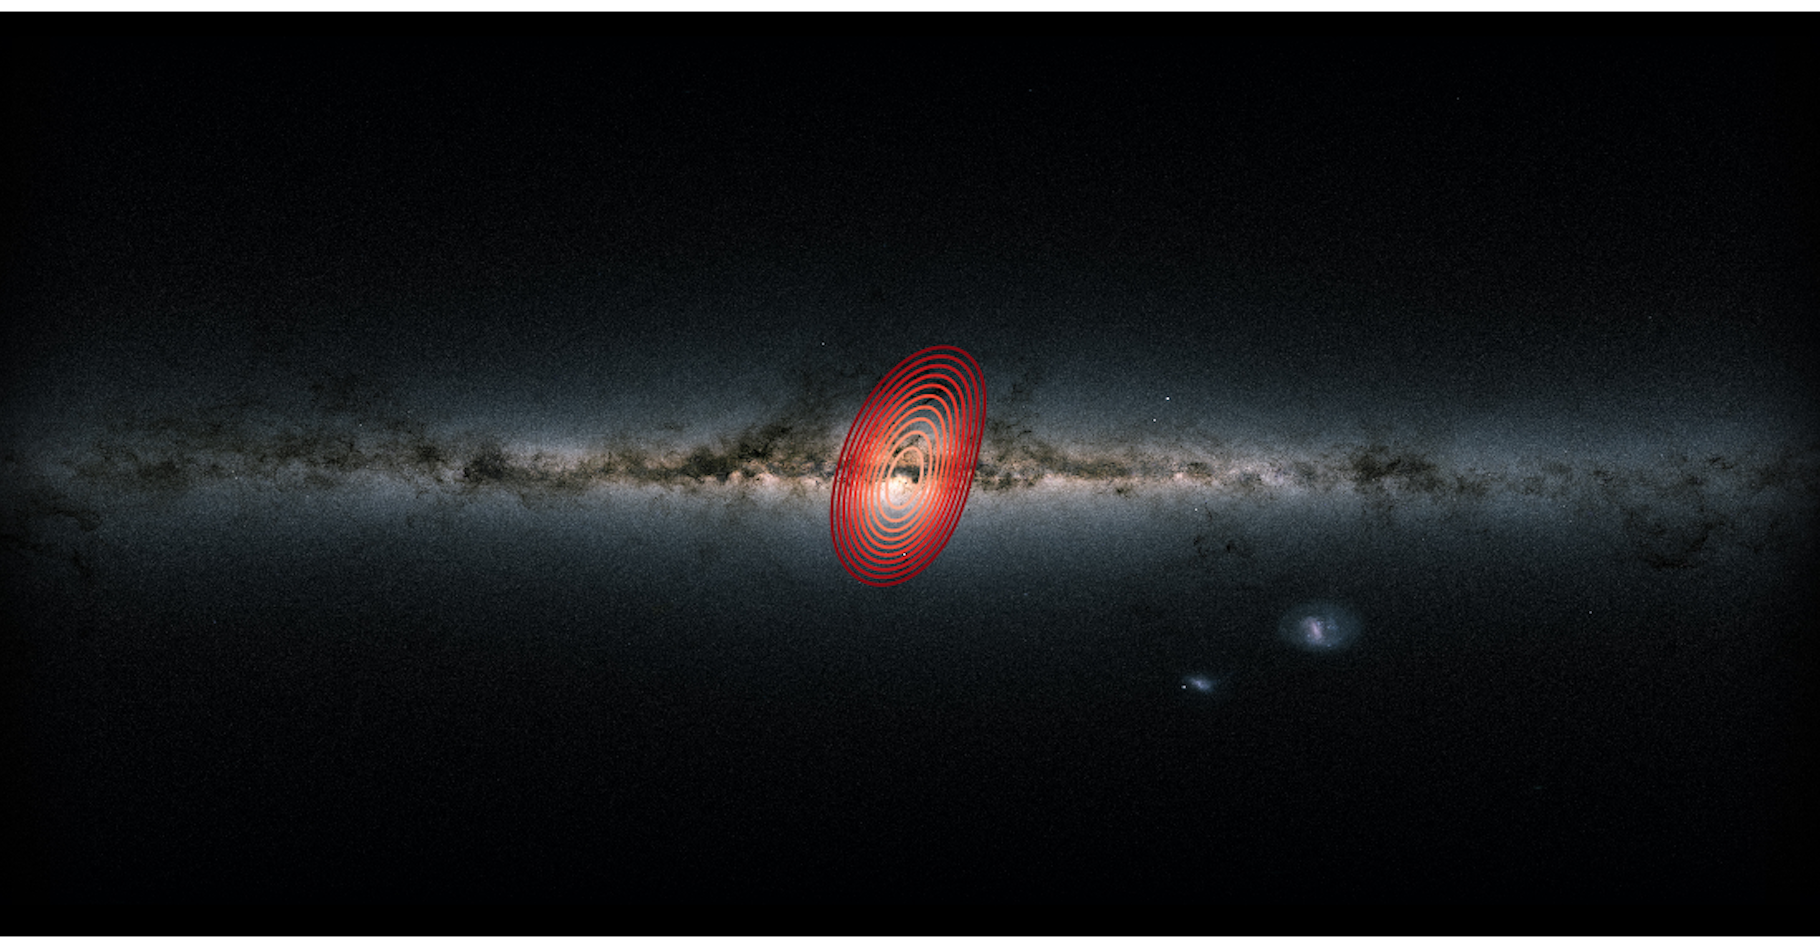 La Voie lactée telle que l’on peut la voir depuis la Terre. Les anneaux colorés montrent l’étendue approximative des étoiles issues d’une galaxie fossile que les astronomes ont baptisée Héraclès. © Danny Horta-Darrington, Université John Moores de Liverpool, ESA, Gaia et SDSS